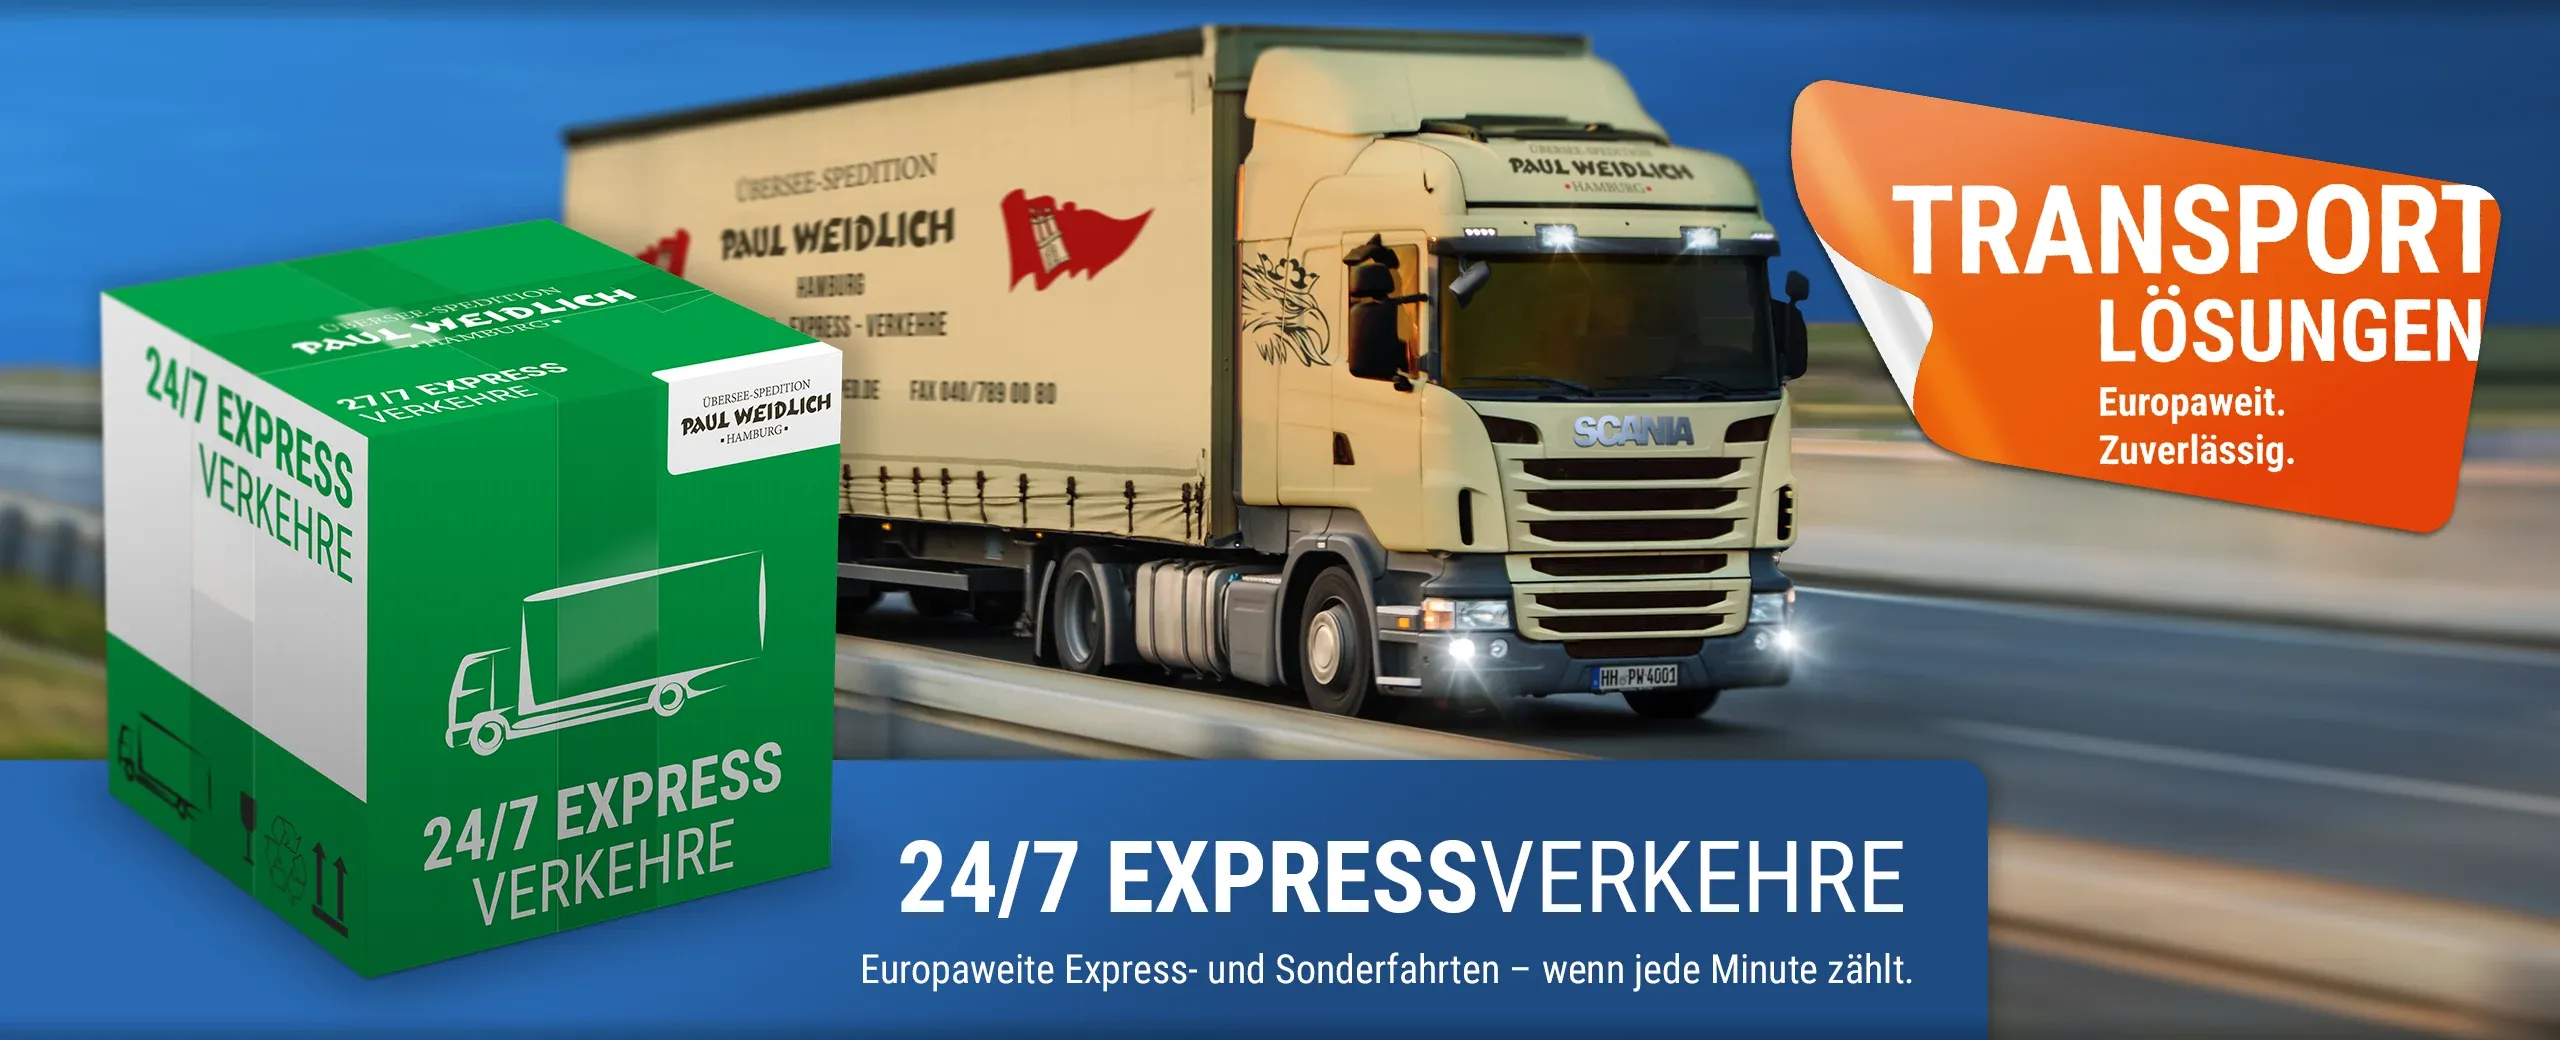 Übersee-Spedition Paul Weidlich GmbH - Hamburg - Express und Sonderfahrten